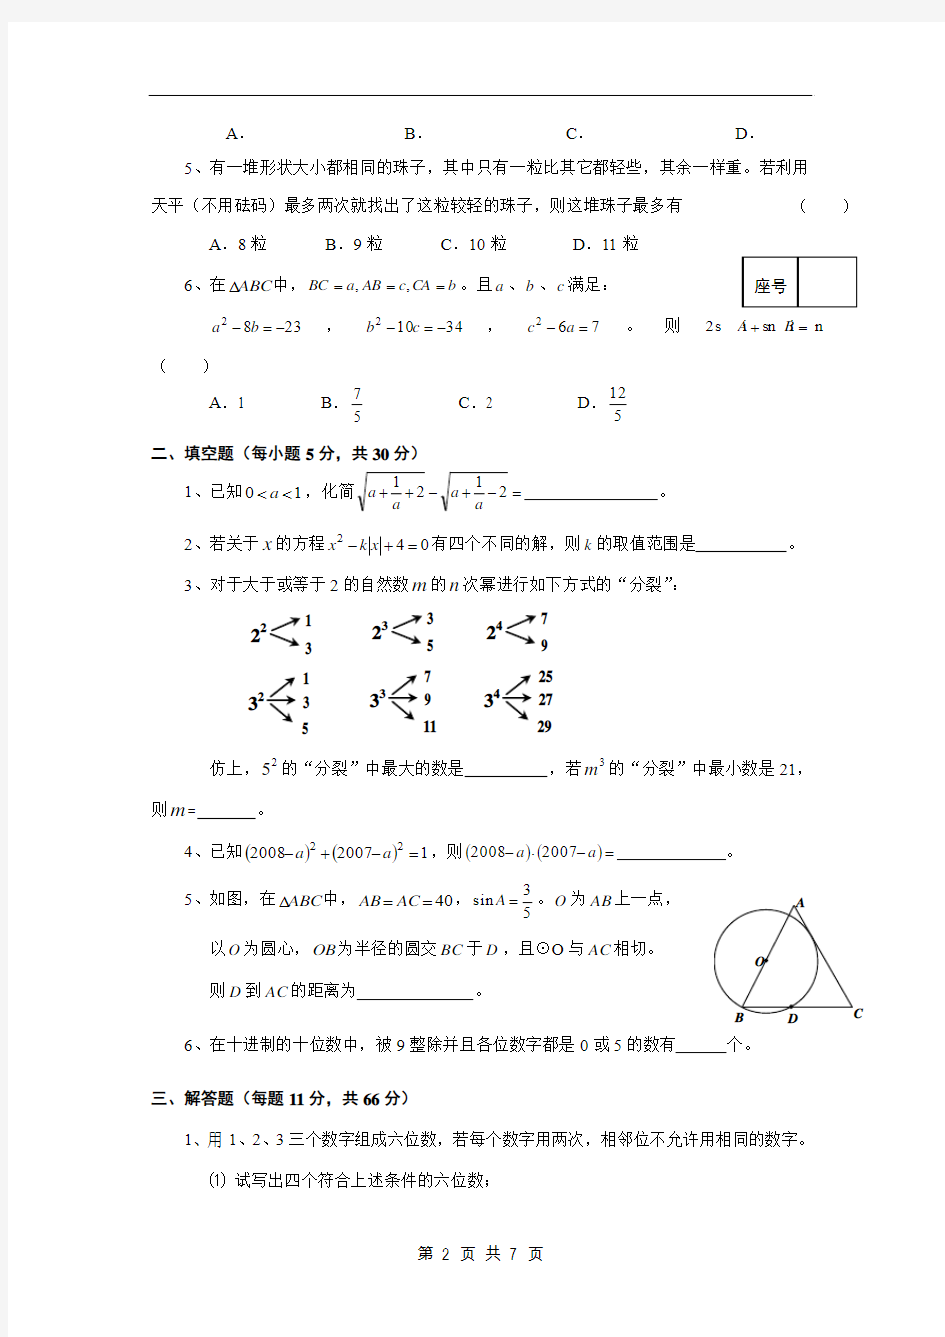 安徽蚌埠二中2017年自主招生考试数学素质测试题(含答案)